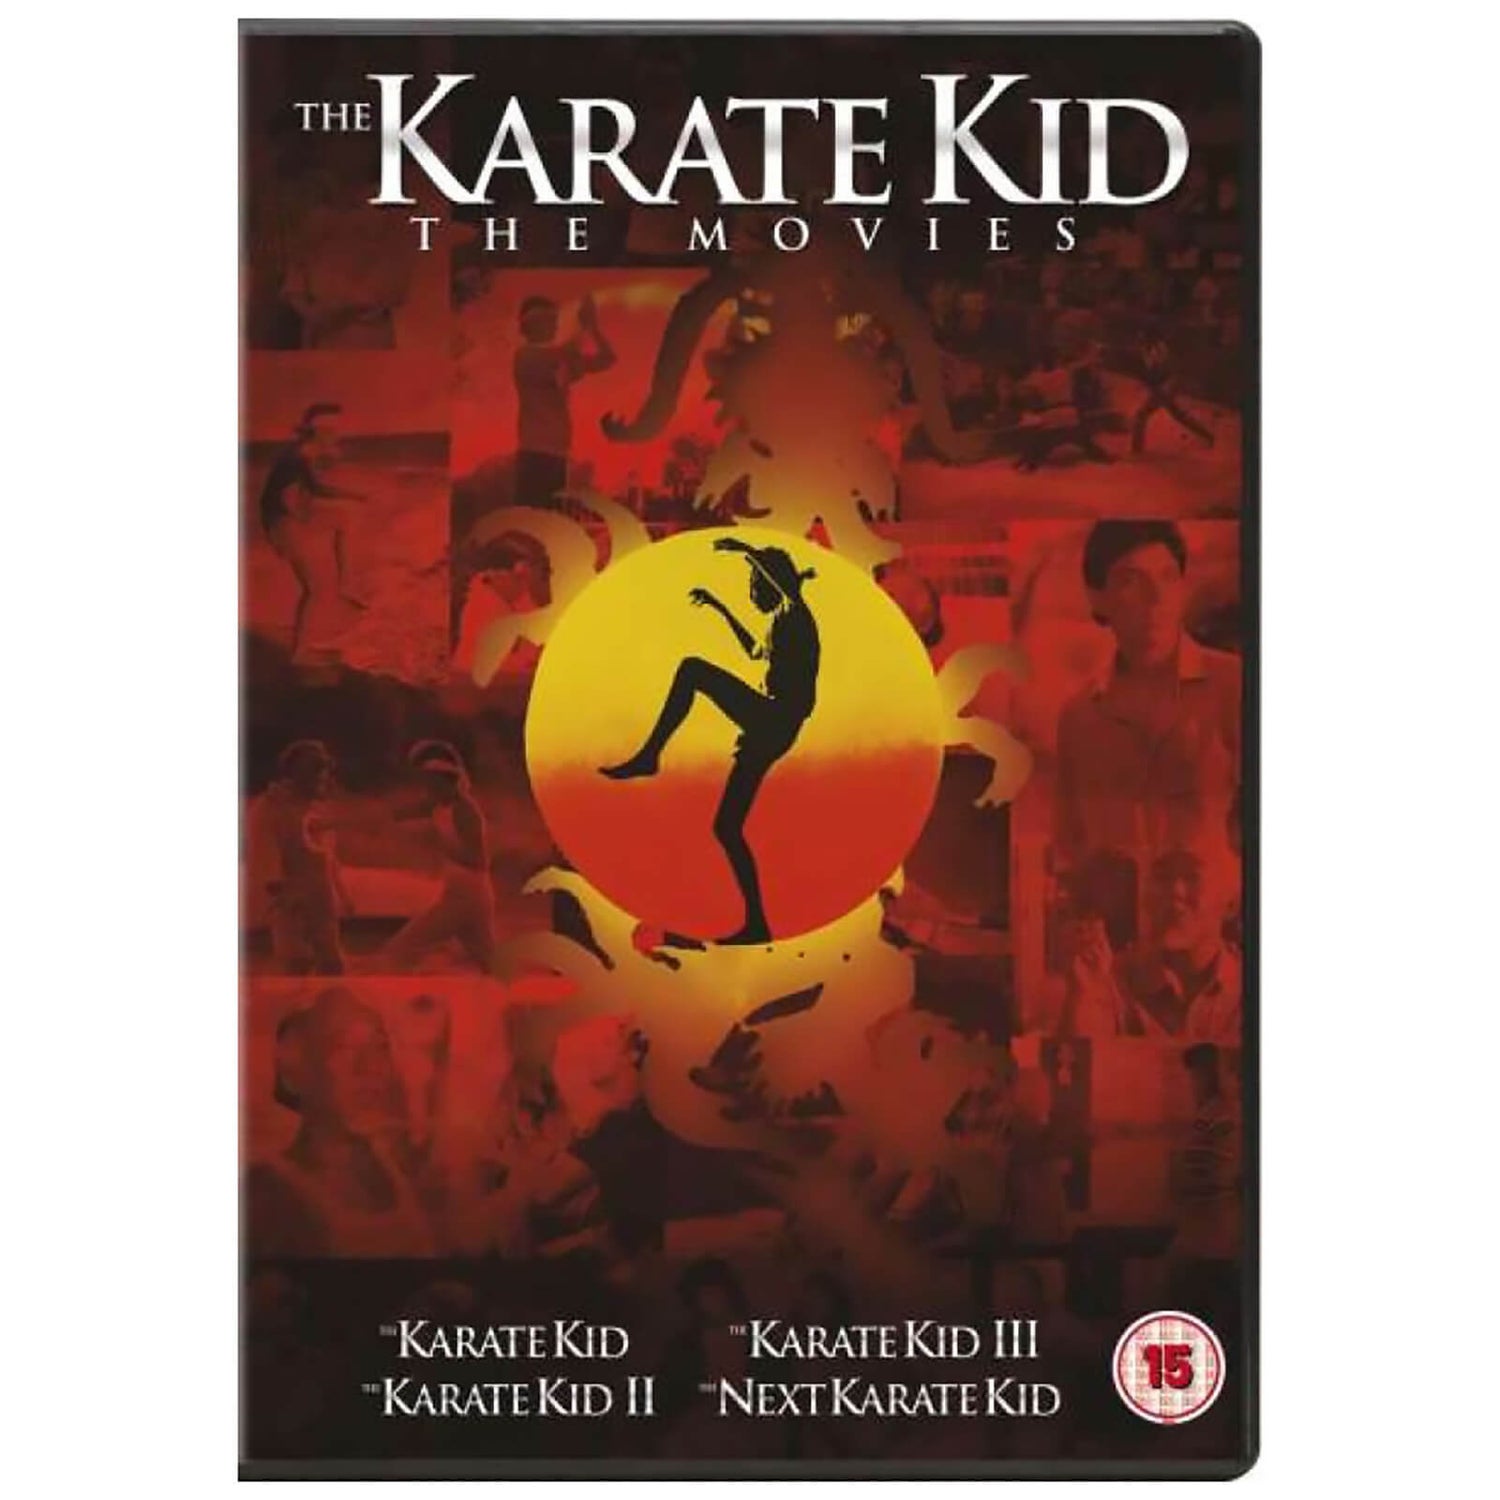 The Karate Kid - Complete Set